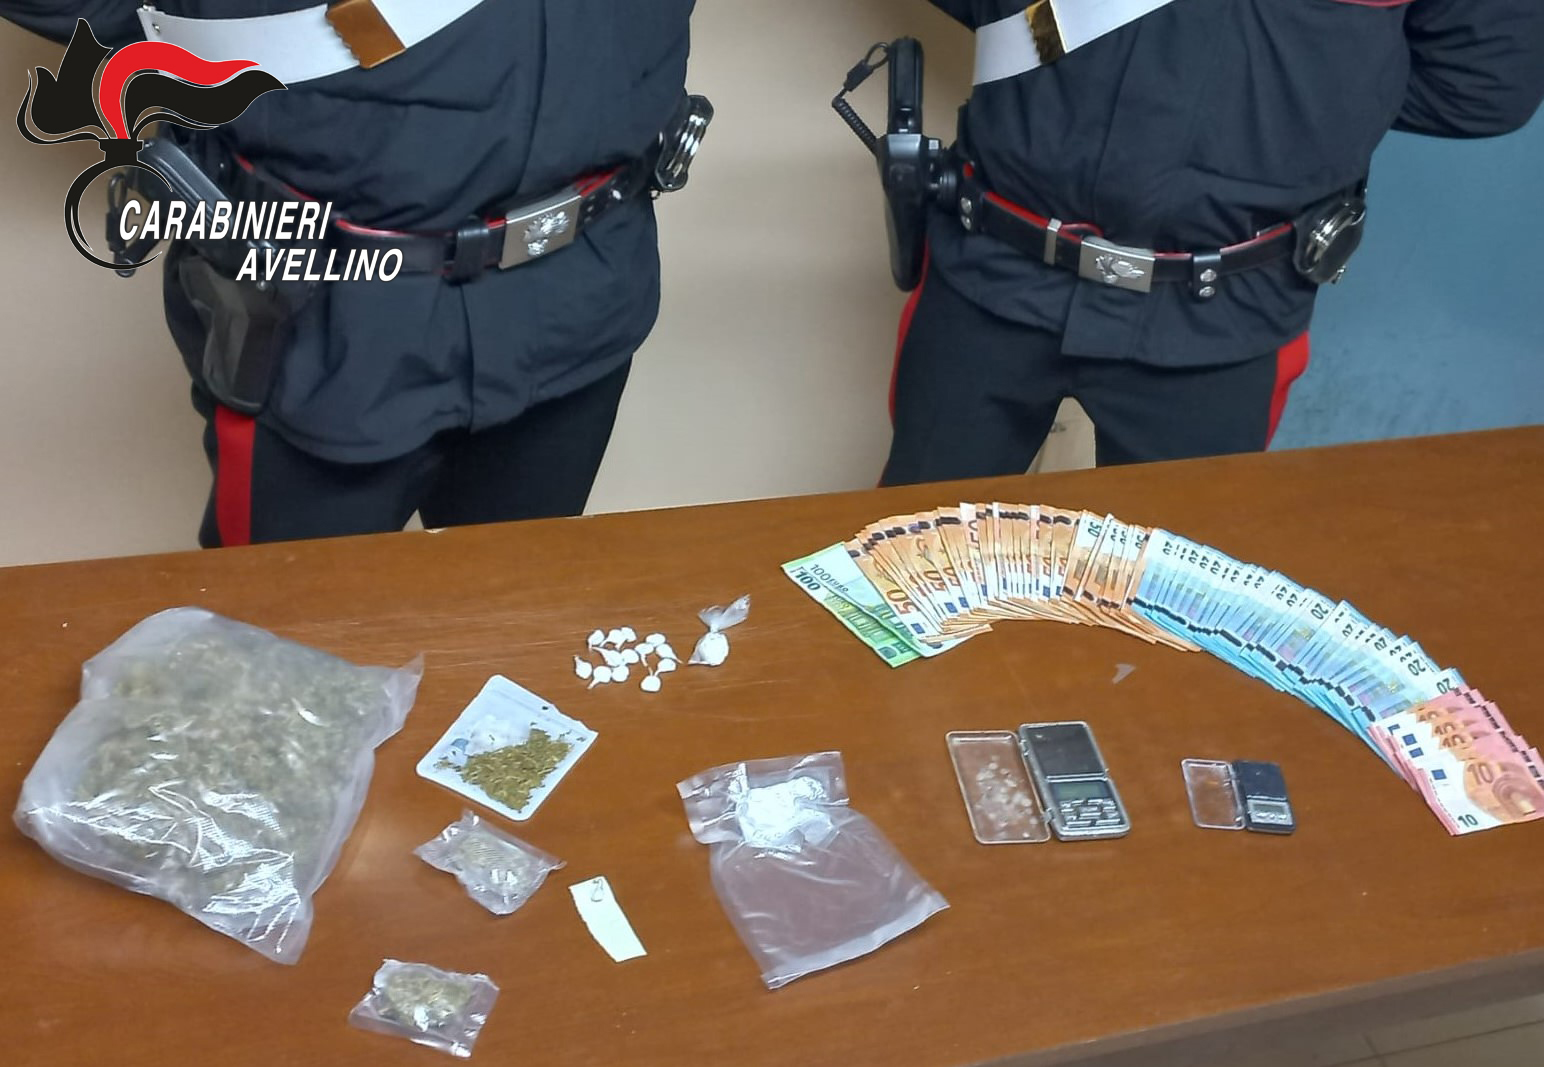 Altavilla Irpina| Operazione antidroga, 4 arresti: sequestro di cocaina e contanti